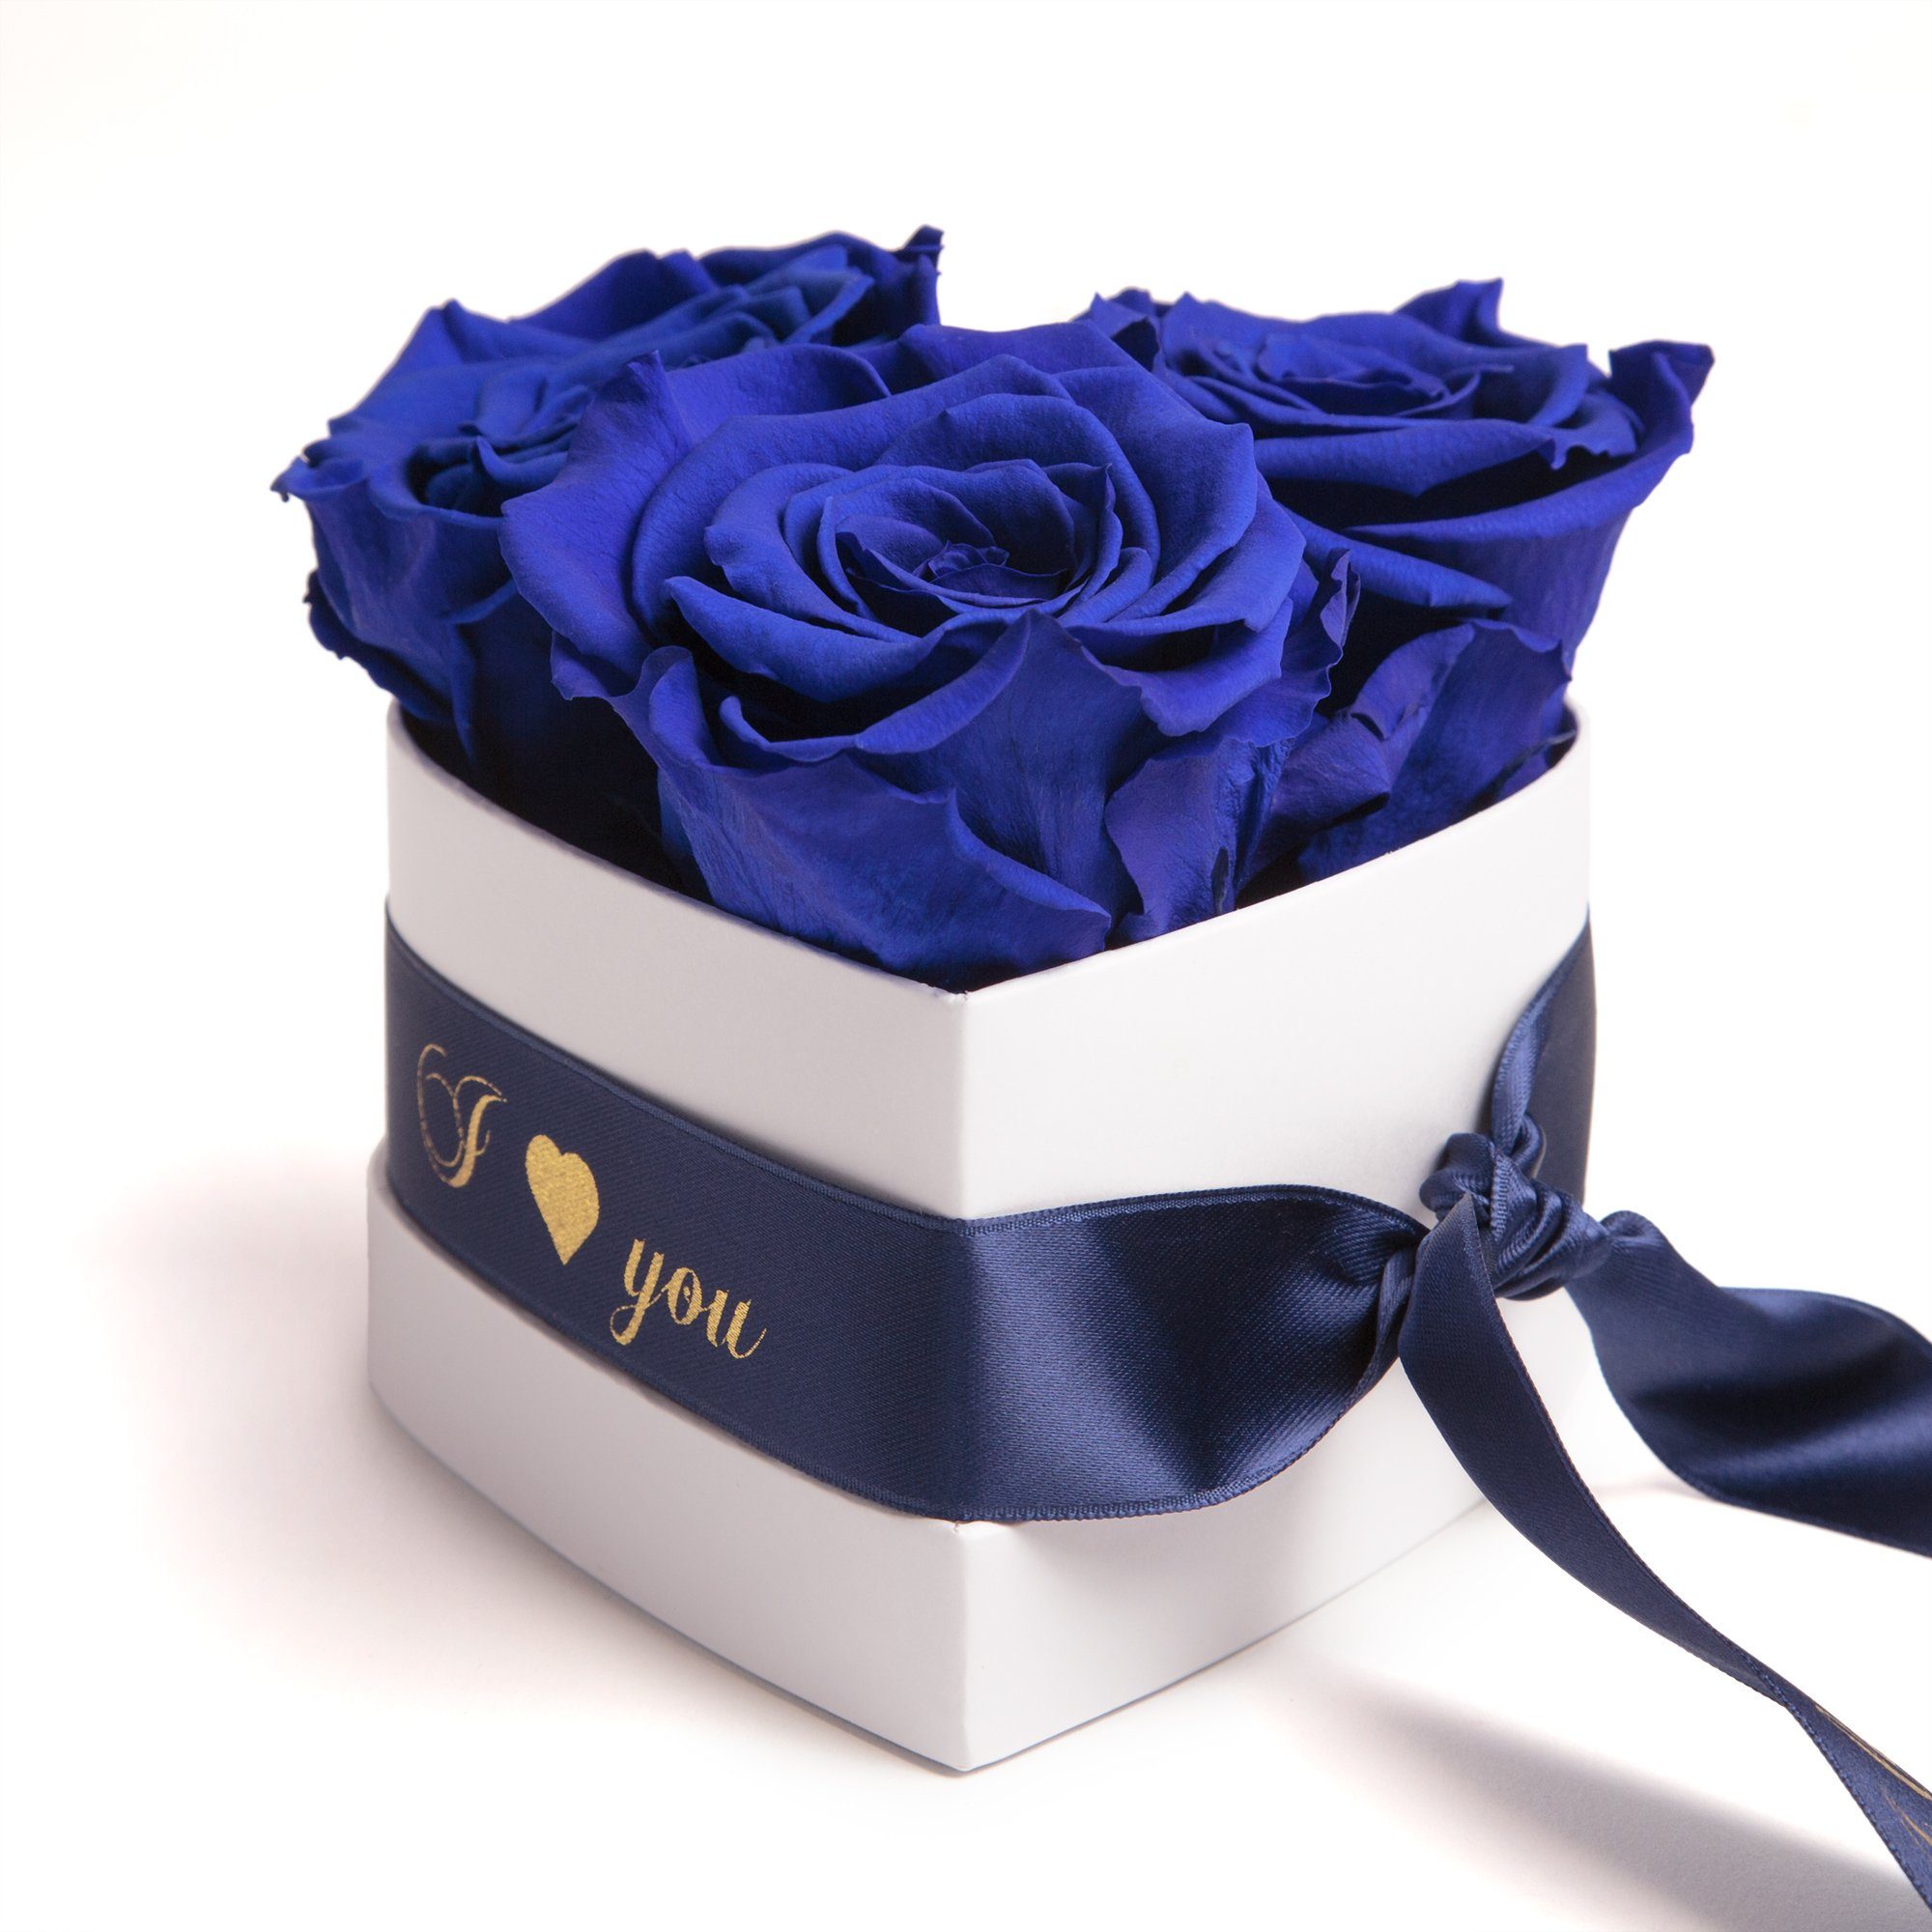 Sie für I 3 Höhe Blau konservierte Valentinstag Geschenk cm, ROSEMARIE Kunstblume 8.5 in Infinity SCHULZ Rose, Heidelberg, Love Rosenbox Herz You Rosen Box